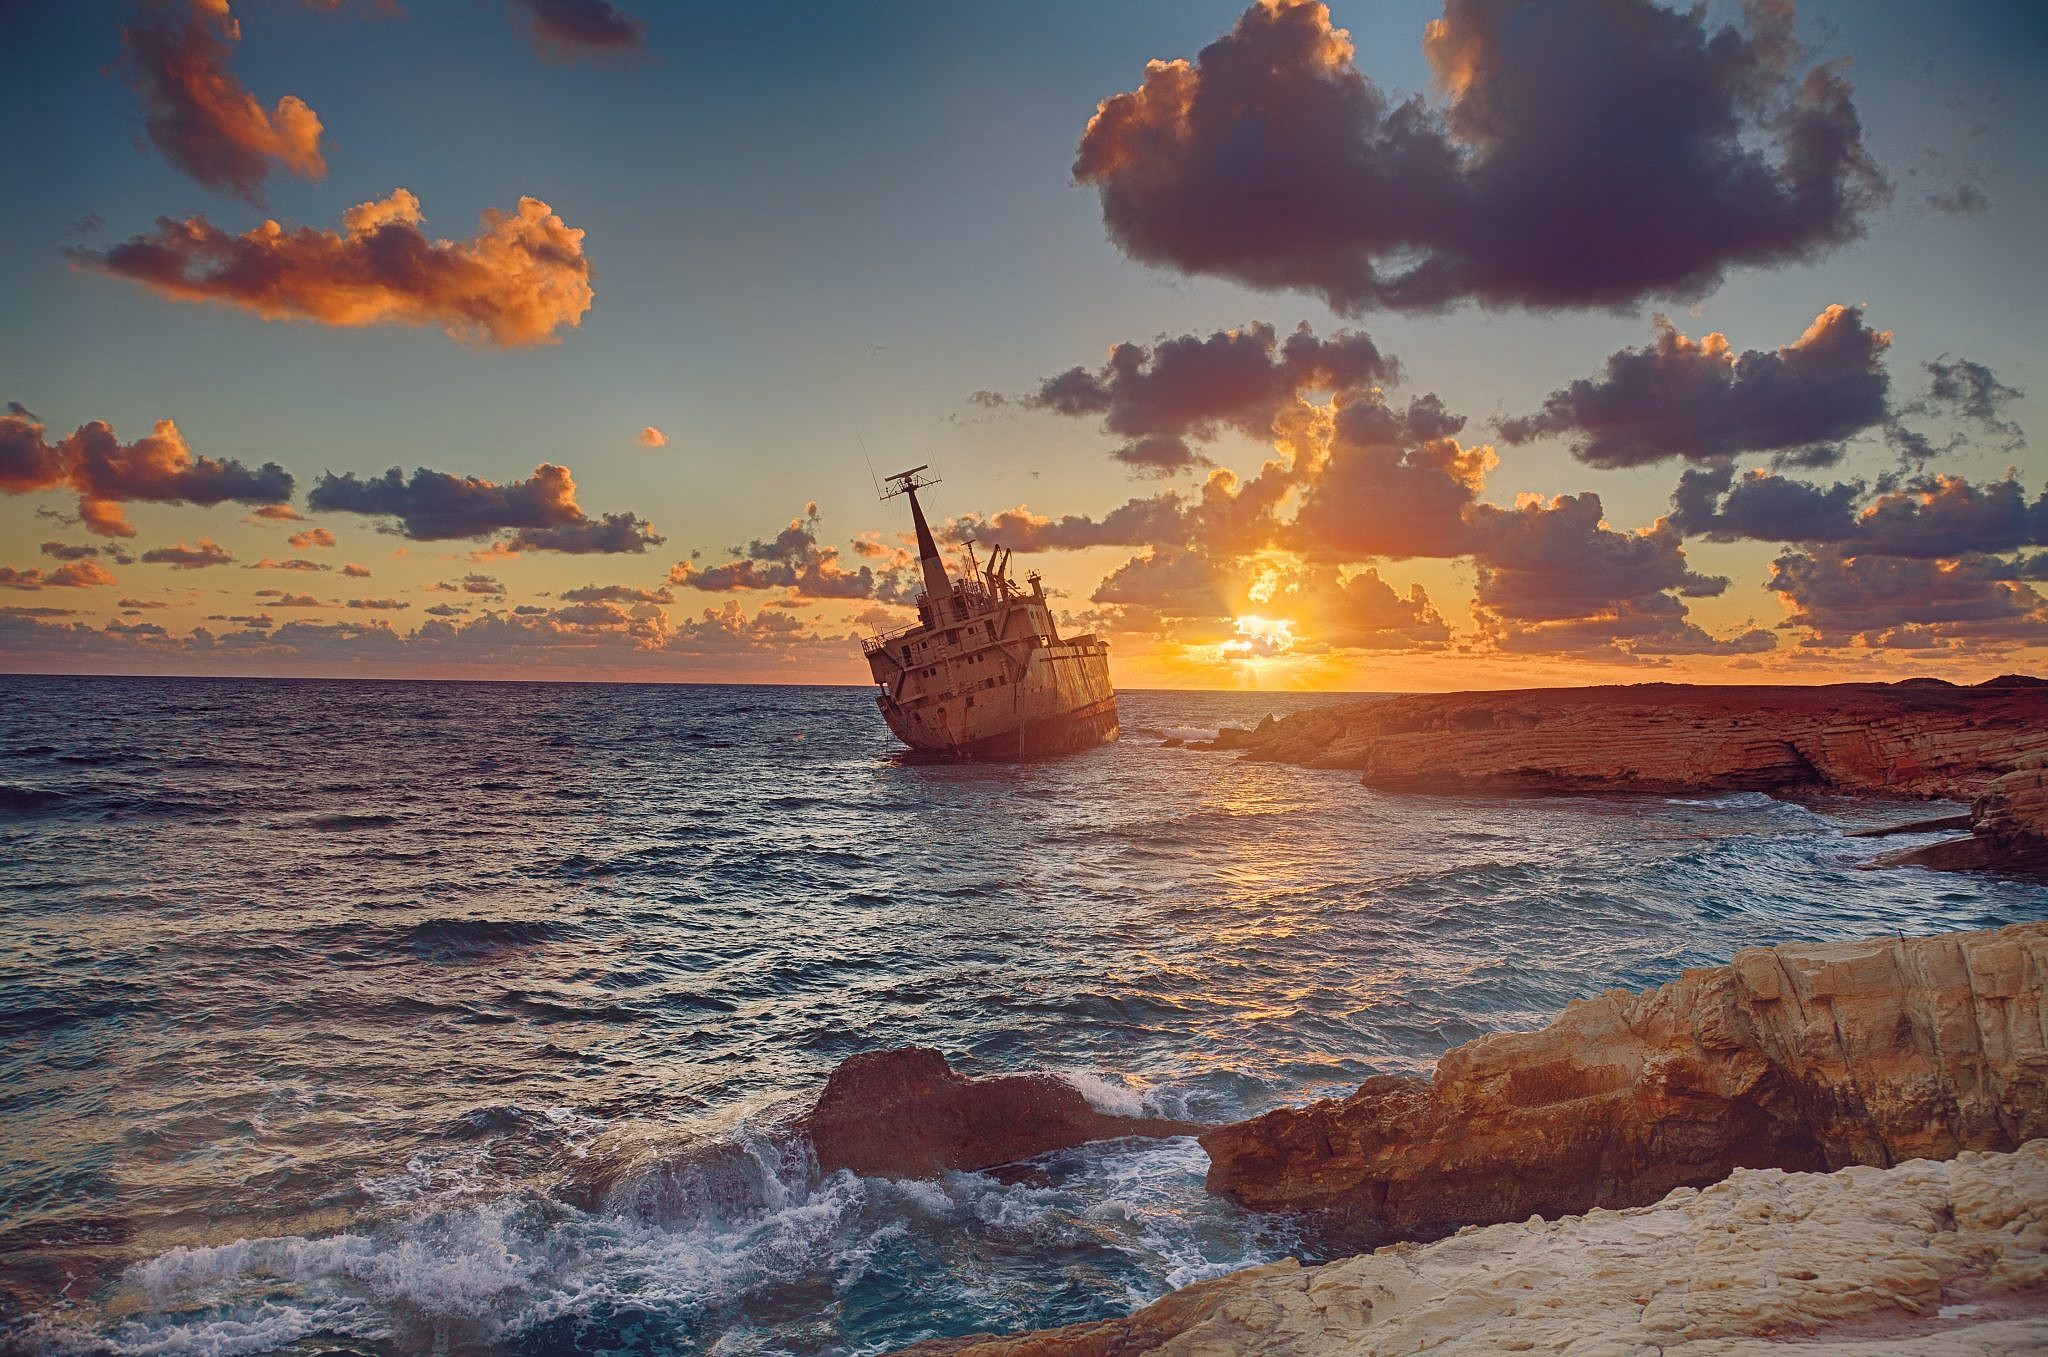 הכי רומנטי שיש: הספינה הטבועה בפאפוס | צילום Shutterstock